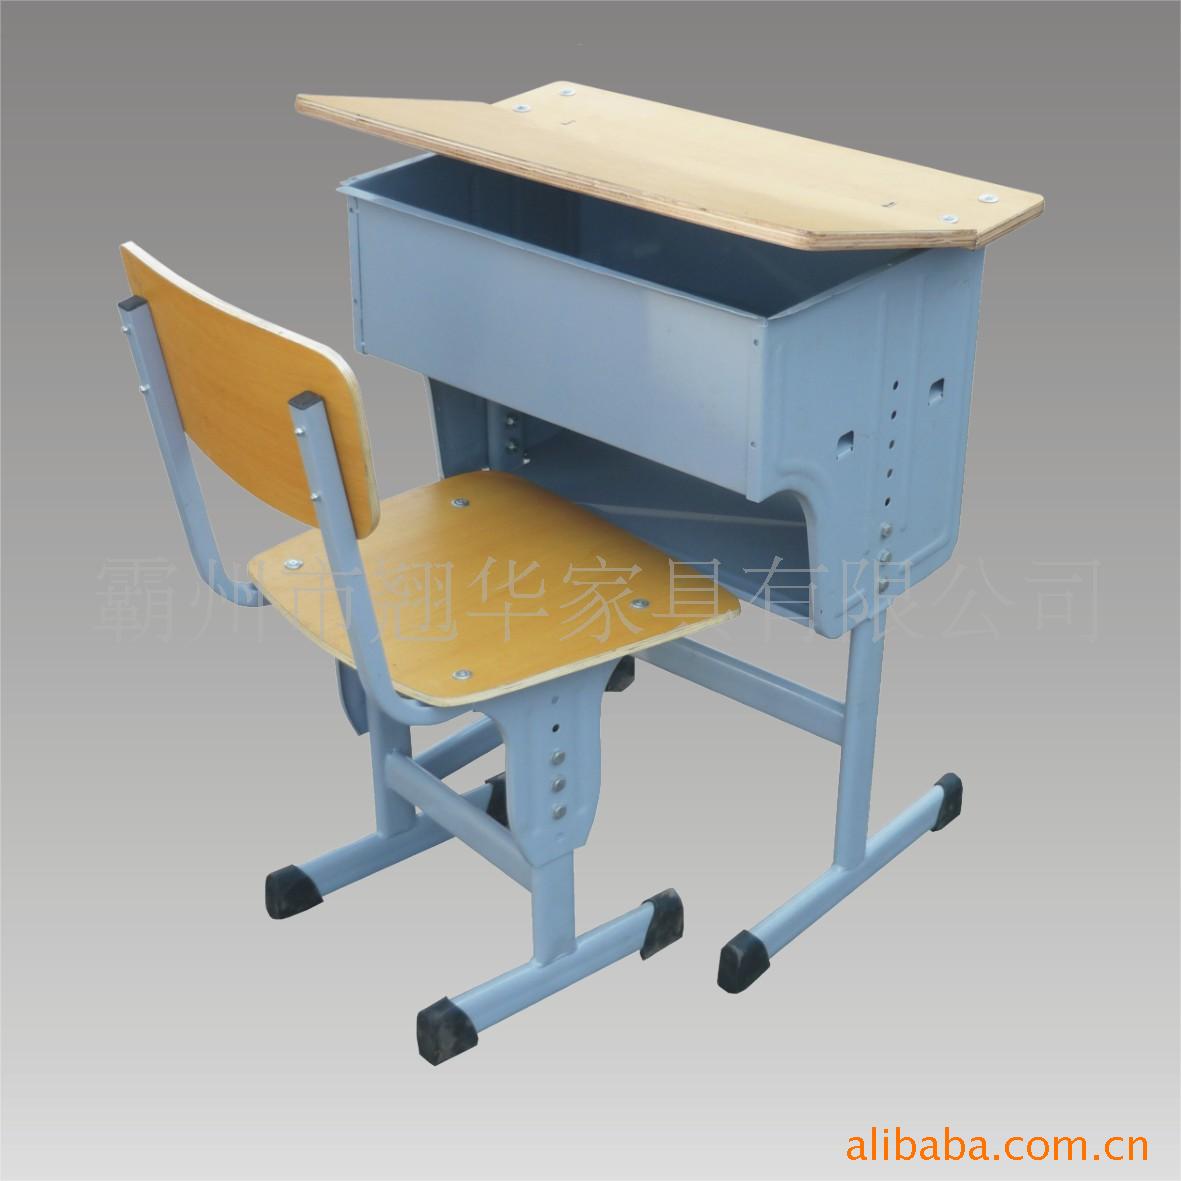 K-02型可调式课桌椅